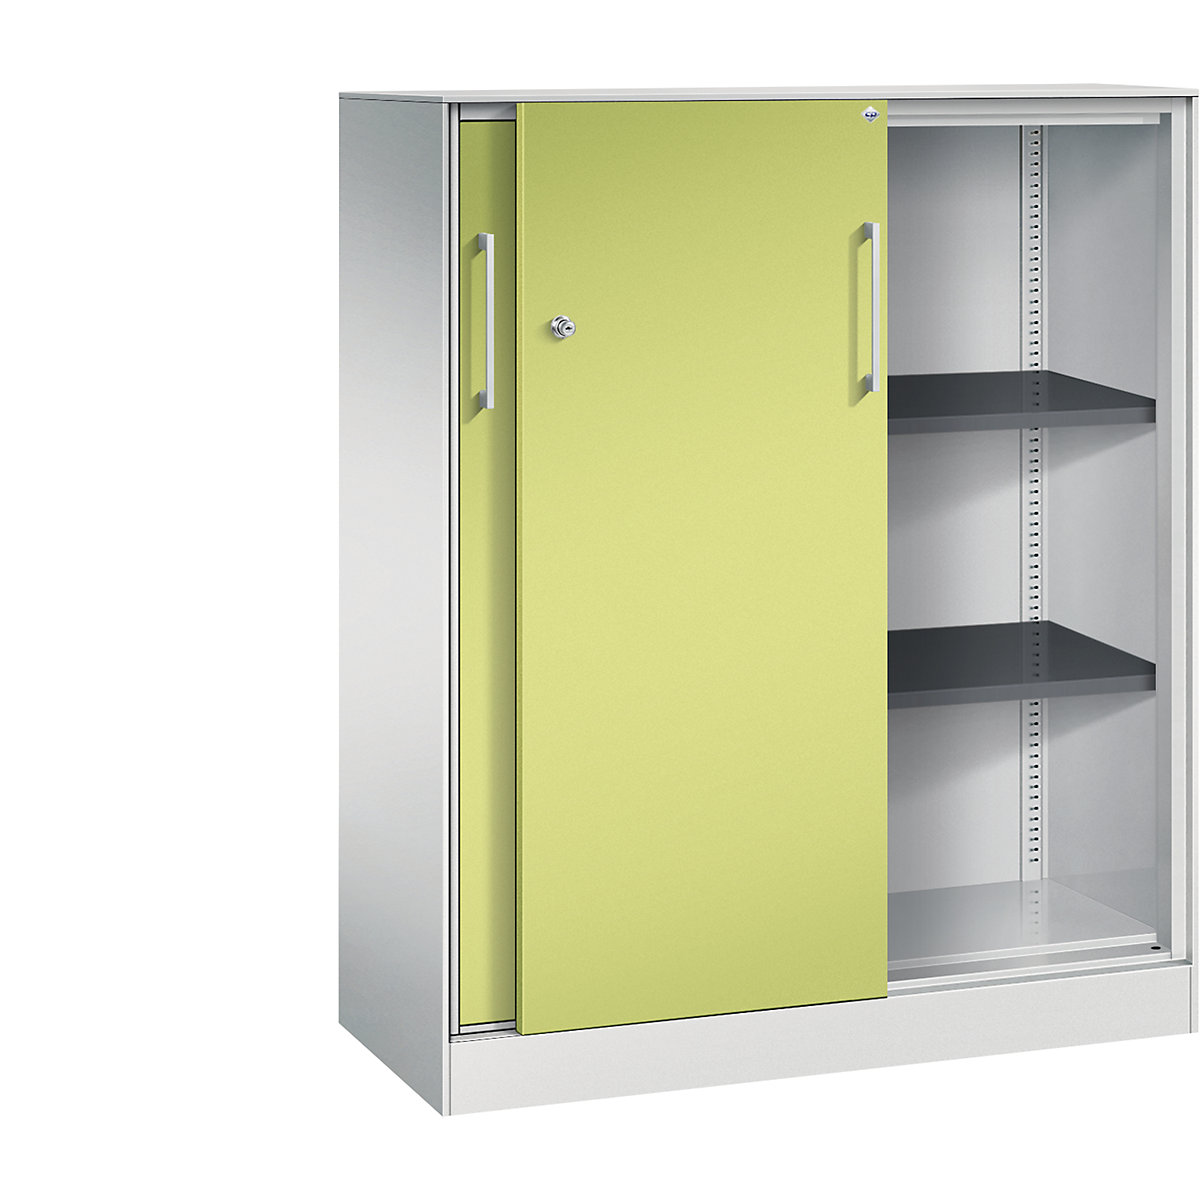 ASISTO sliding door cupboard, height 1292 mm – C+P, width 1000 mm, light grey/viridian green-20